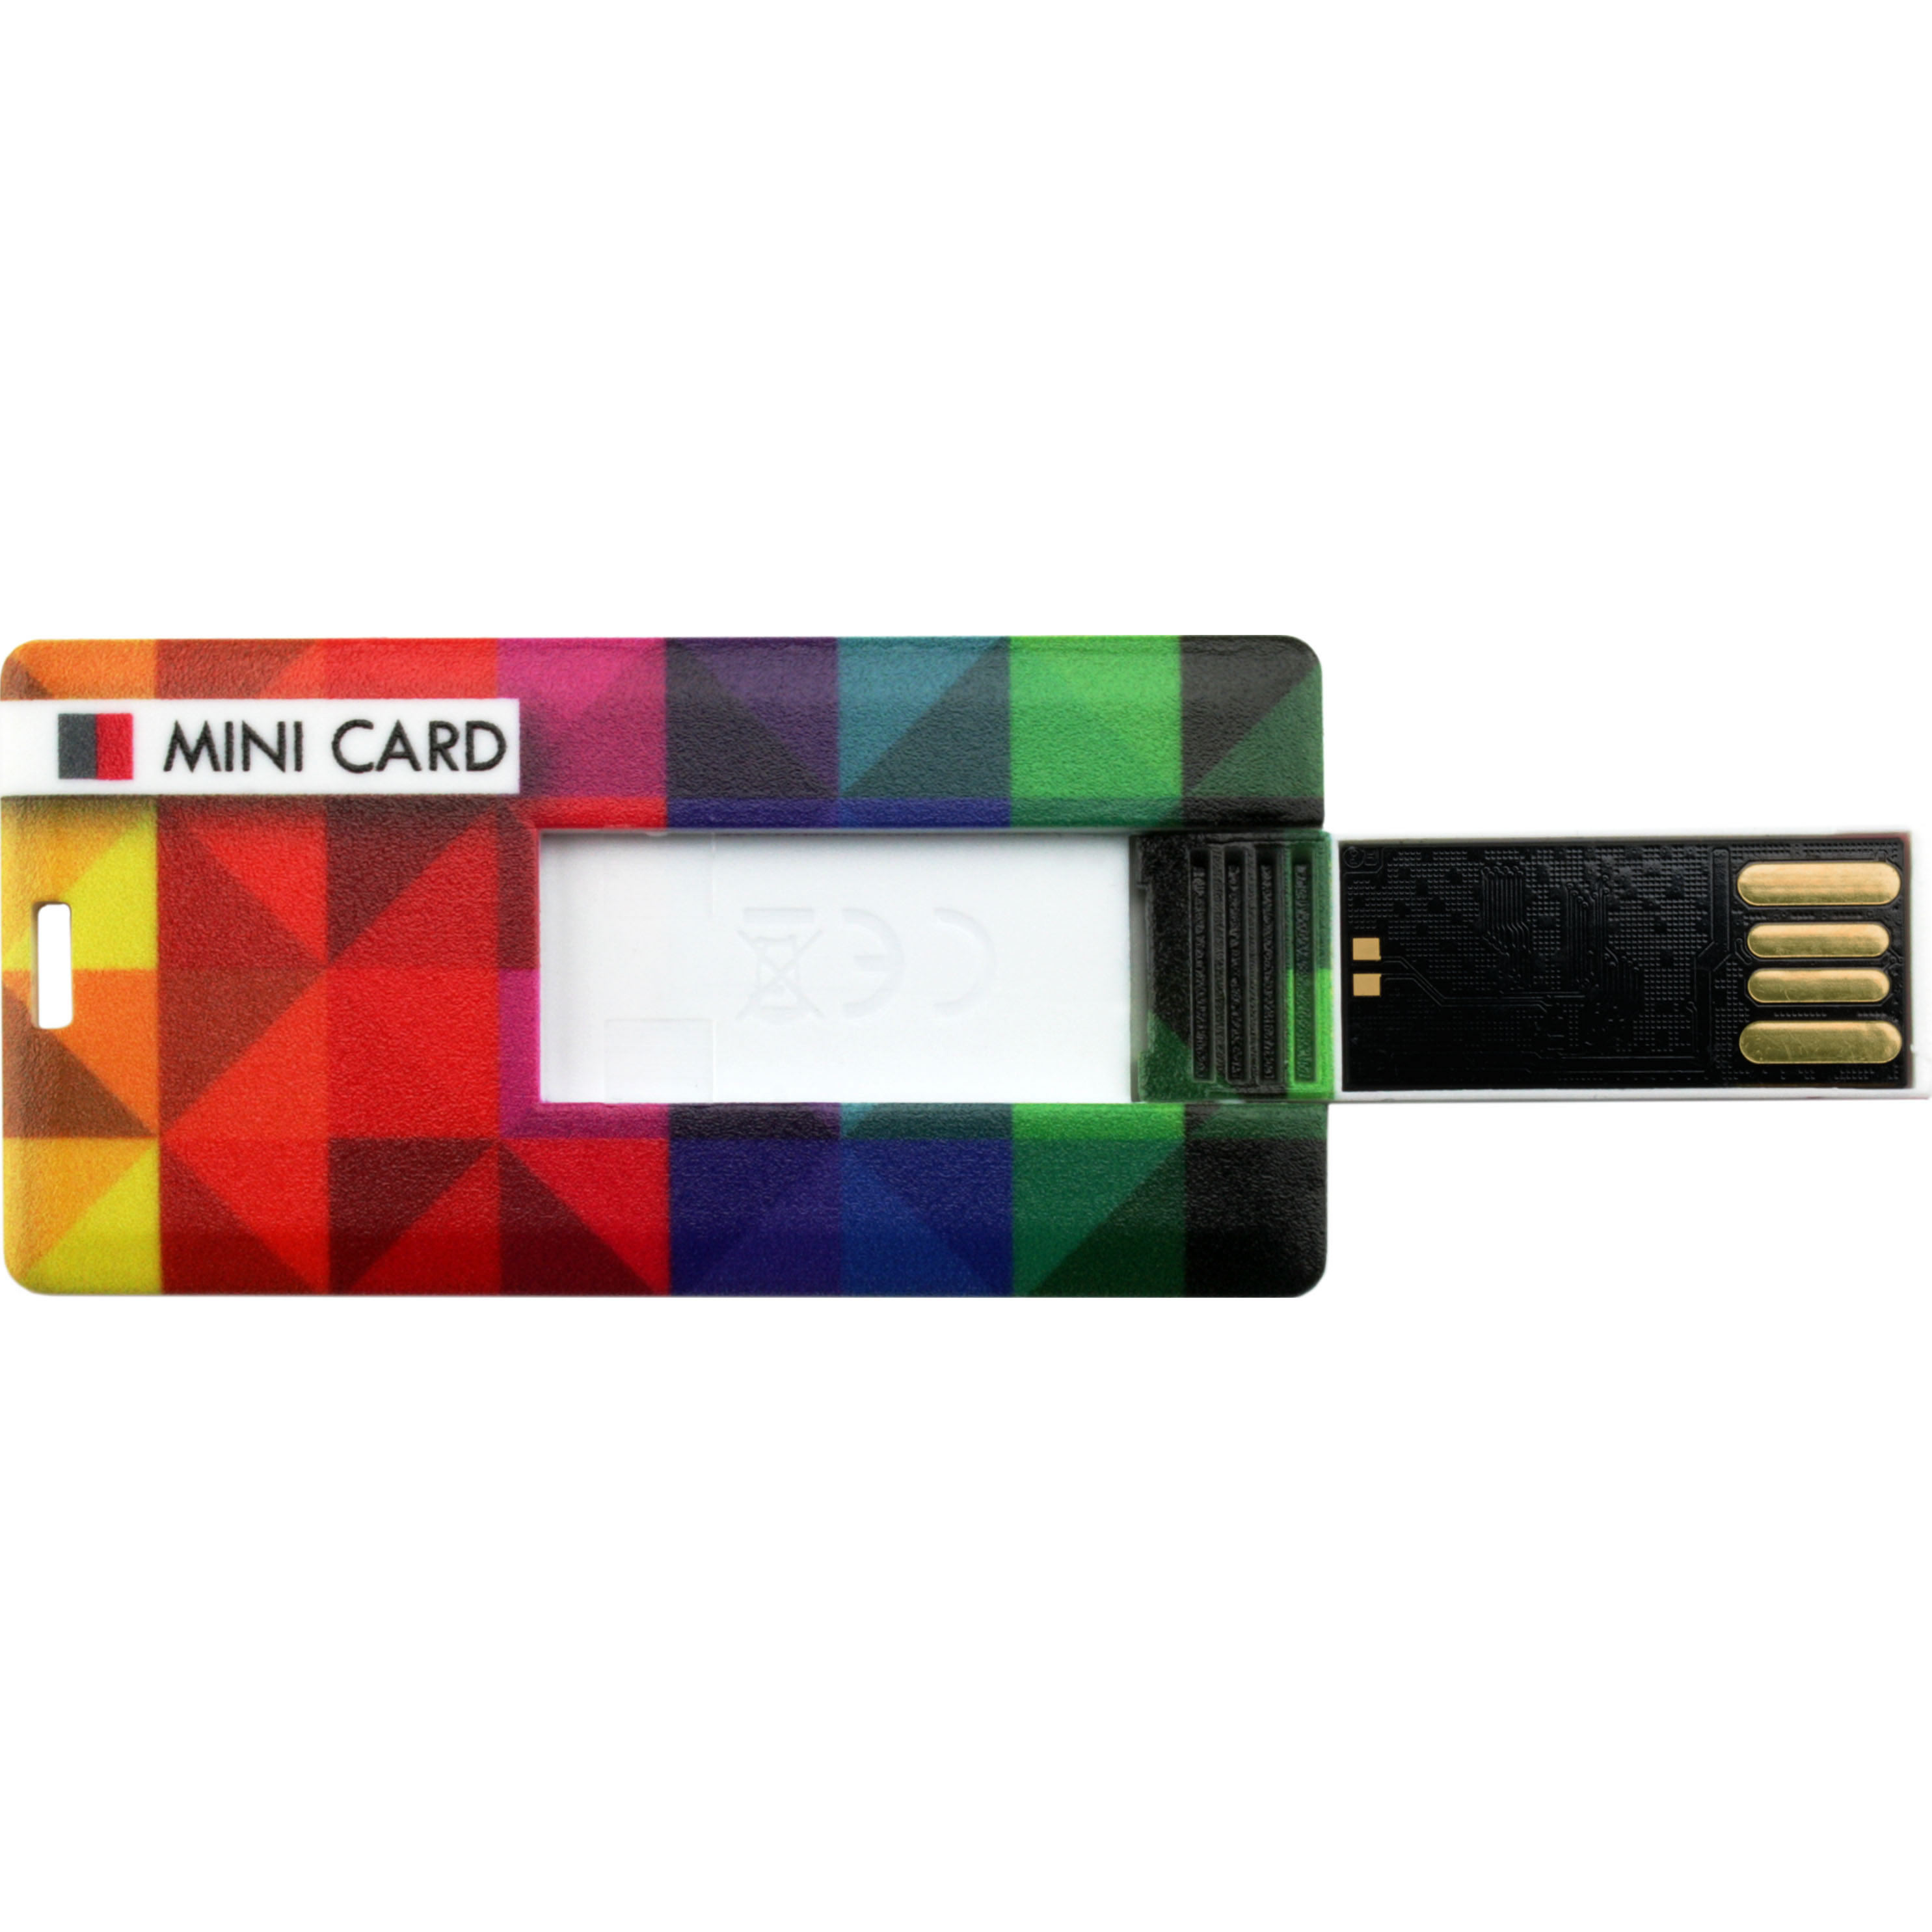 USB Mini Card